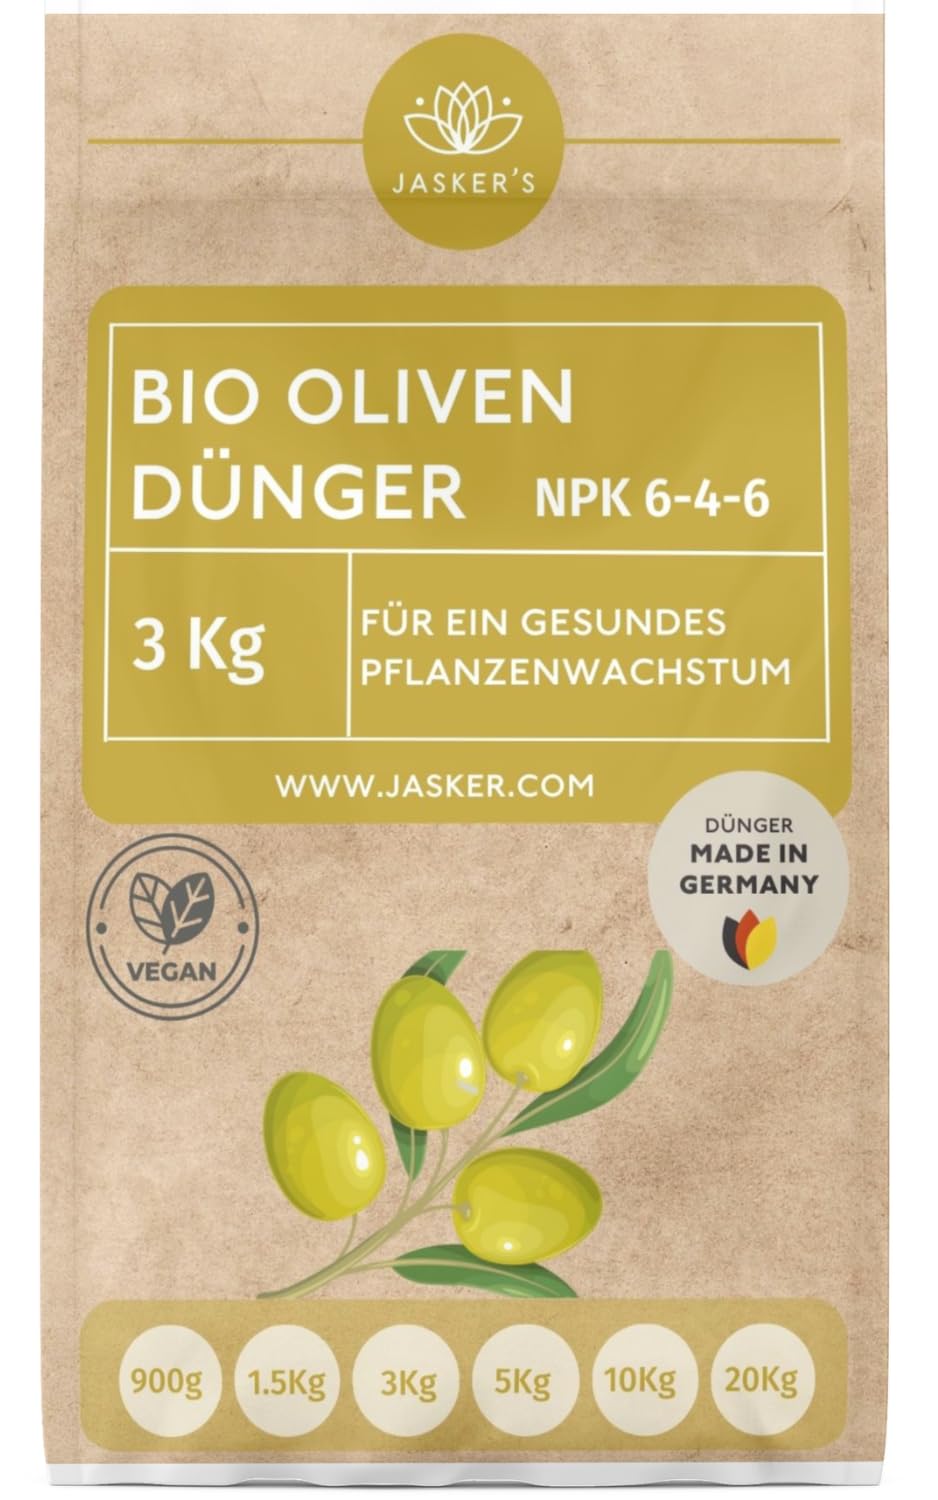 Bio Olivenbaum Dünger 3 Kg Langzeitdünger - 100% organischer Dünger für Olivenbaum - Mediterraner Dünger für Olivenbaum im Garten & Kübel - Olivenbaumdünger - Oliven Dünger